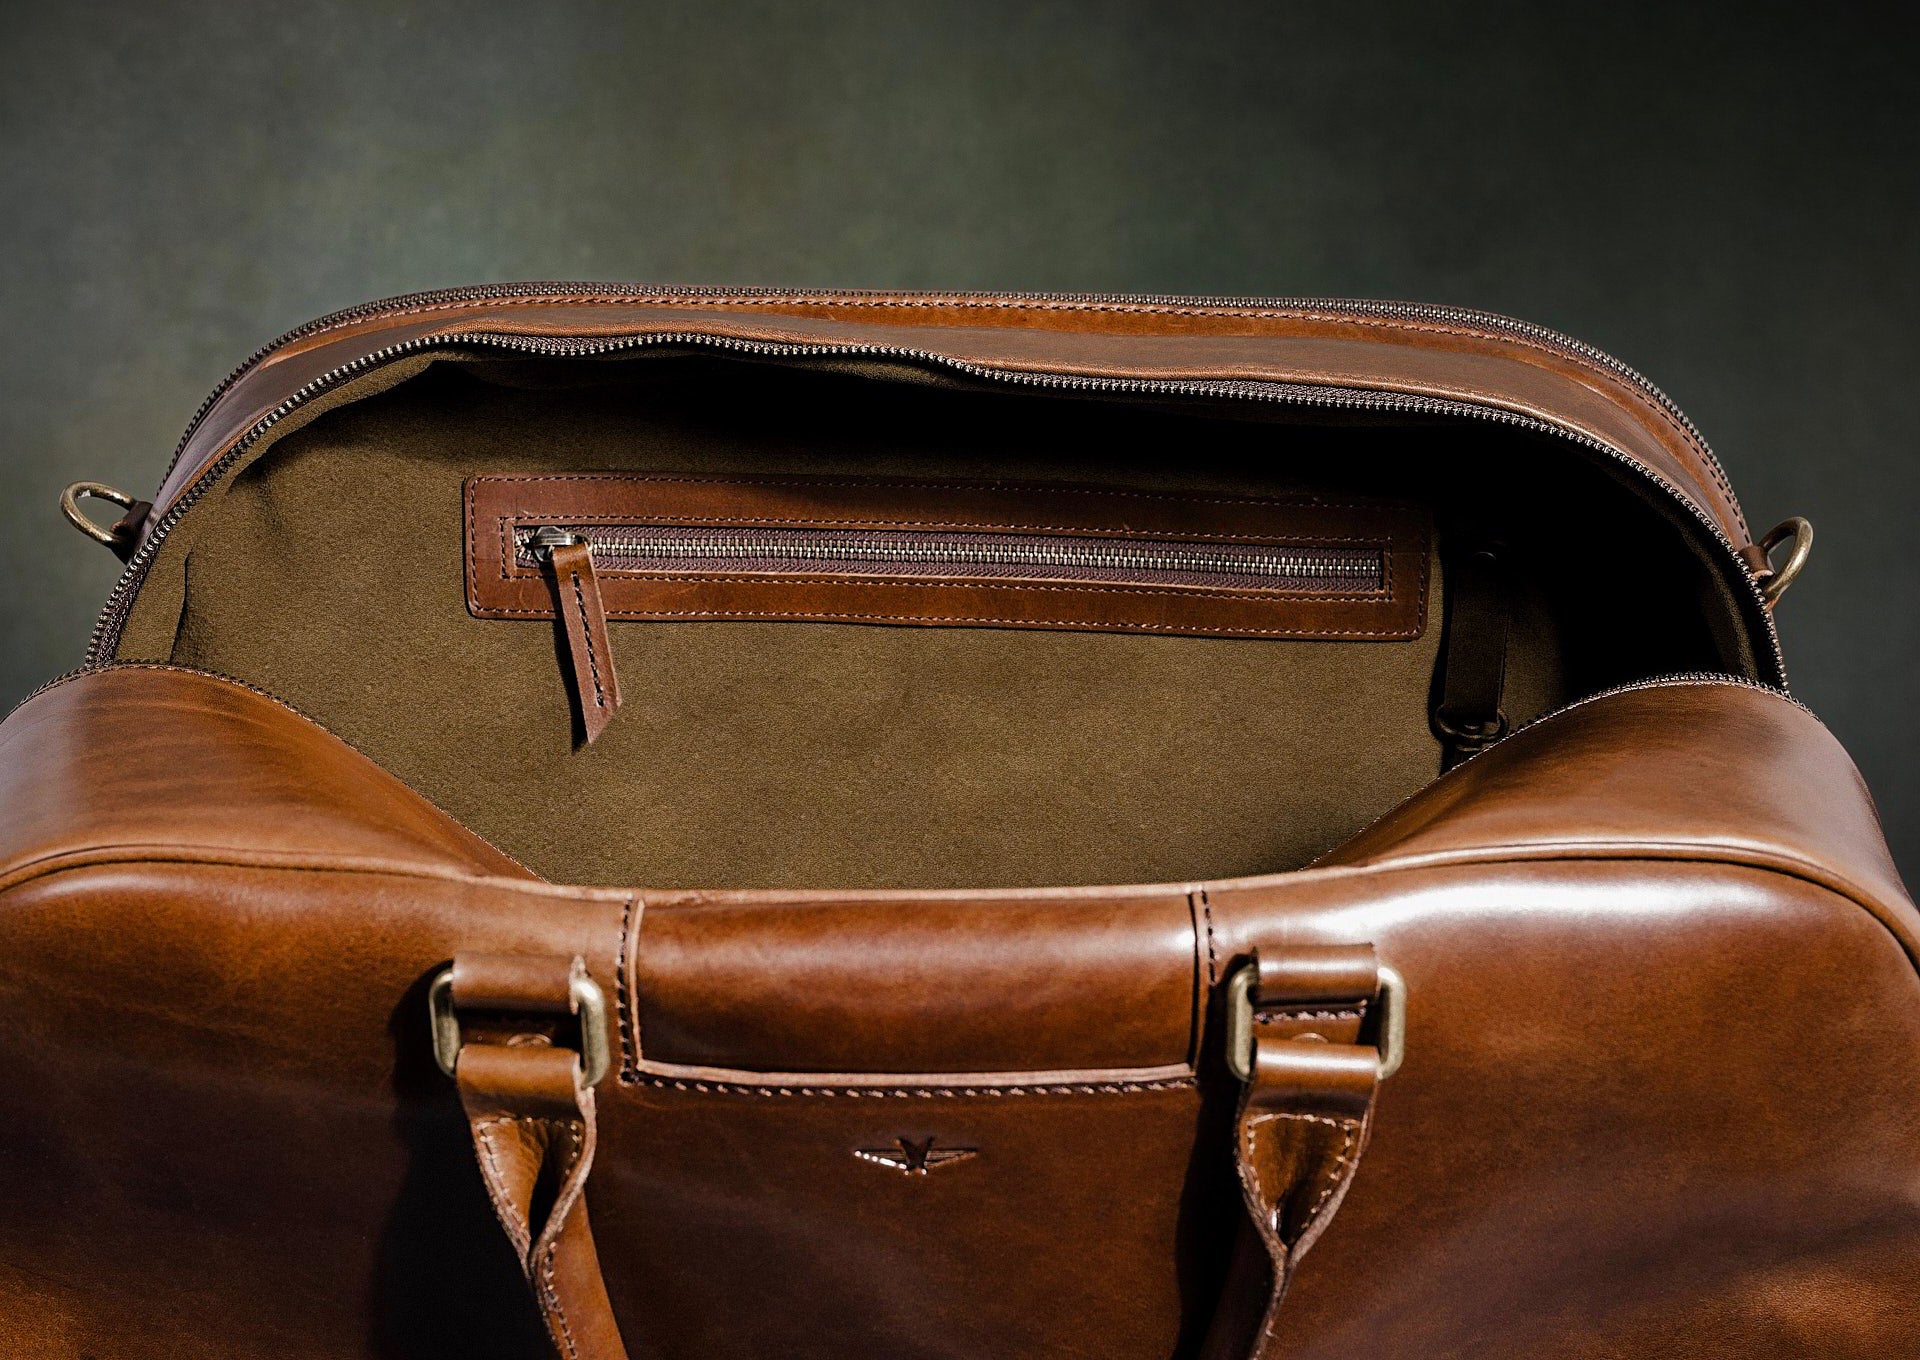 Leather Duffle Bag - Men's Brown Weekender Bag from Satchel